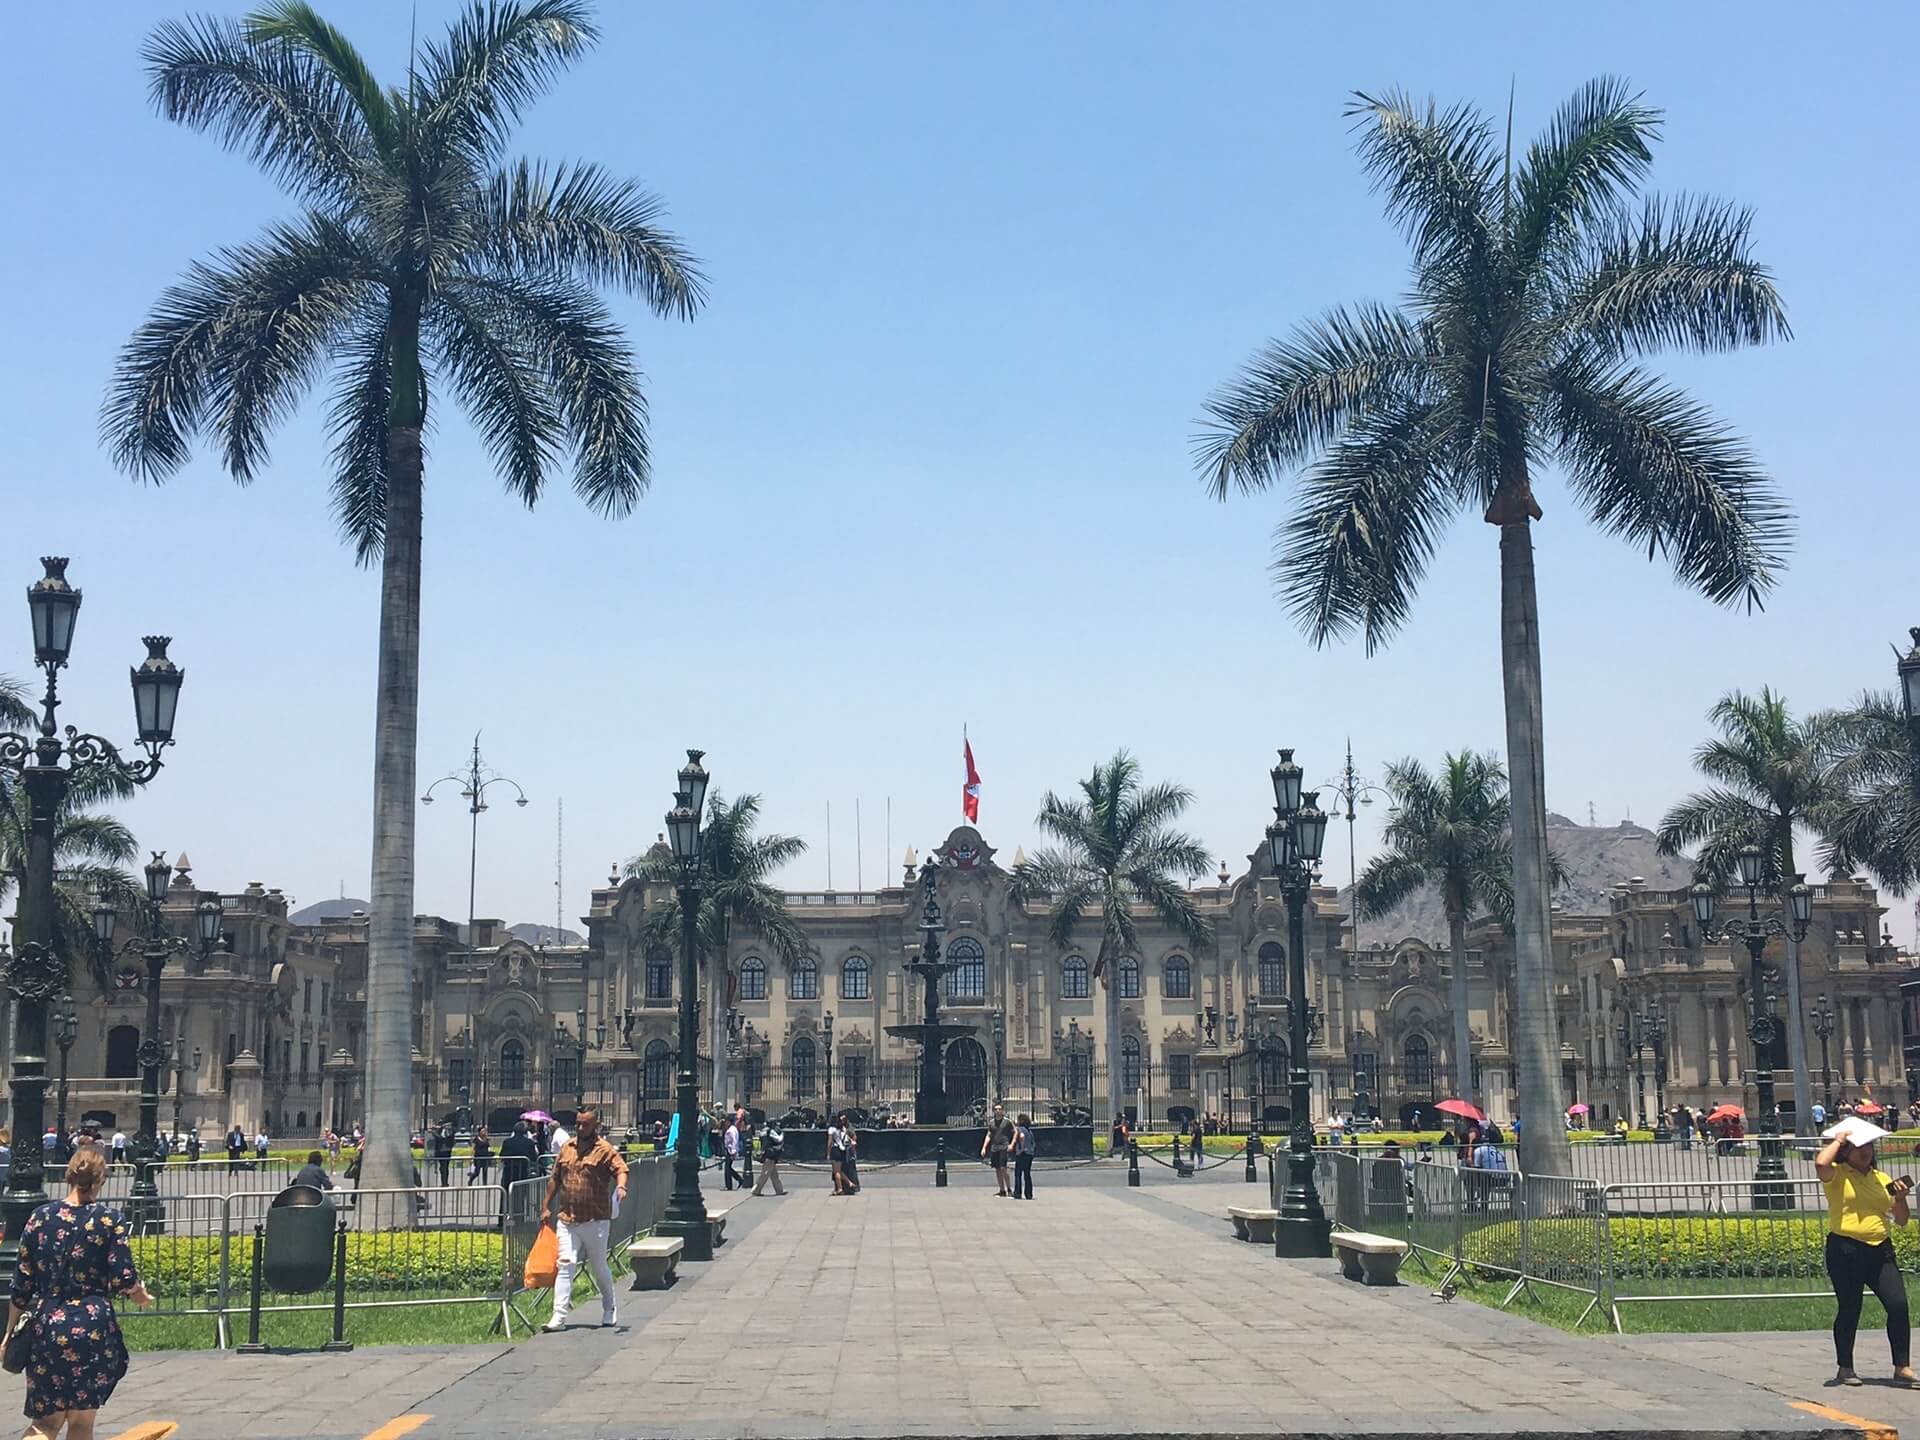 Palacio de Gobierno del Peru